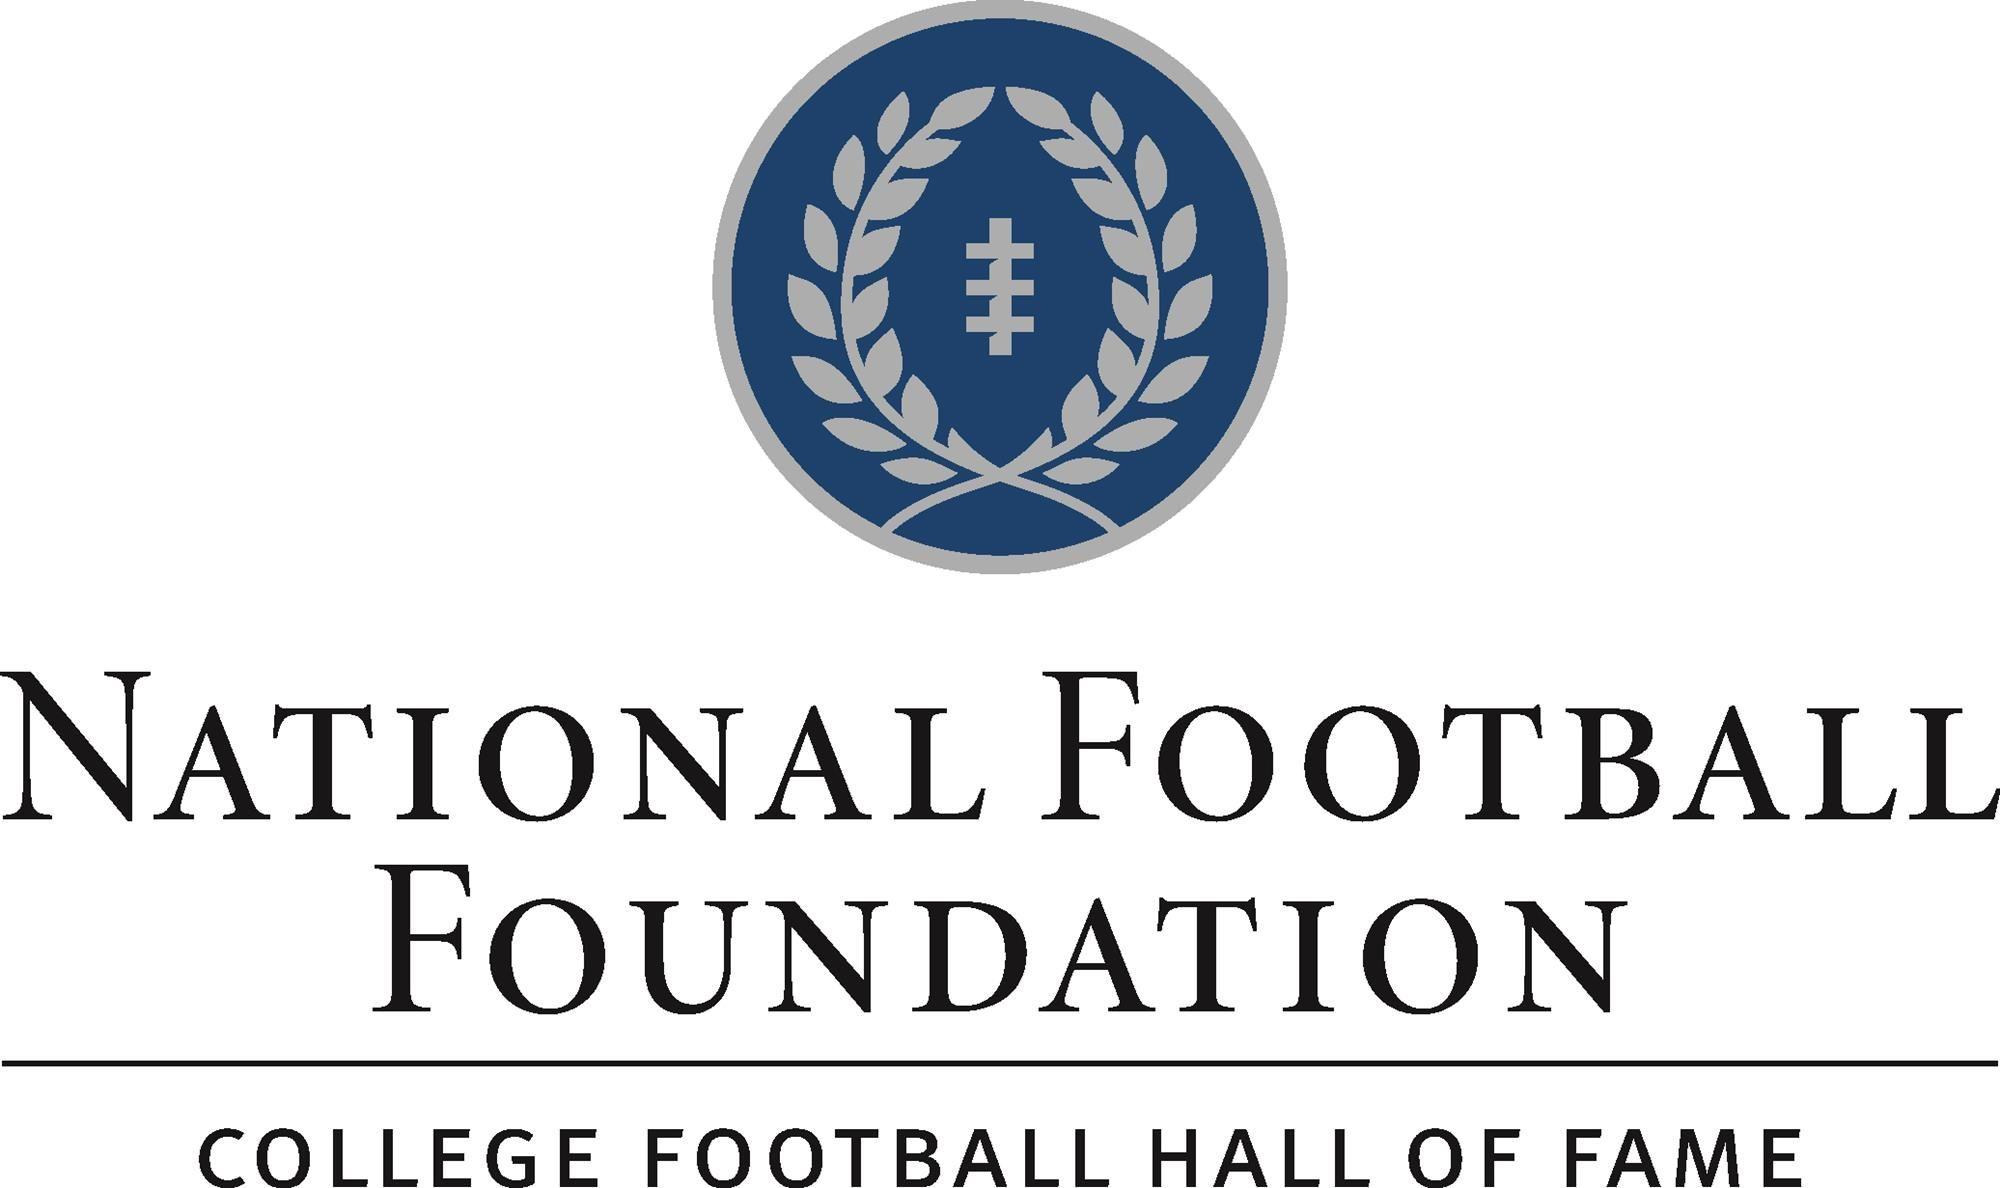 Football Circle Logo - National Football Foundation Logos - National Football Foundation